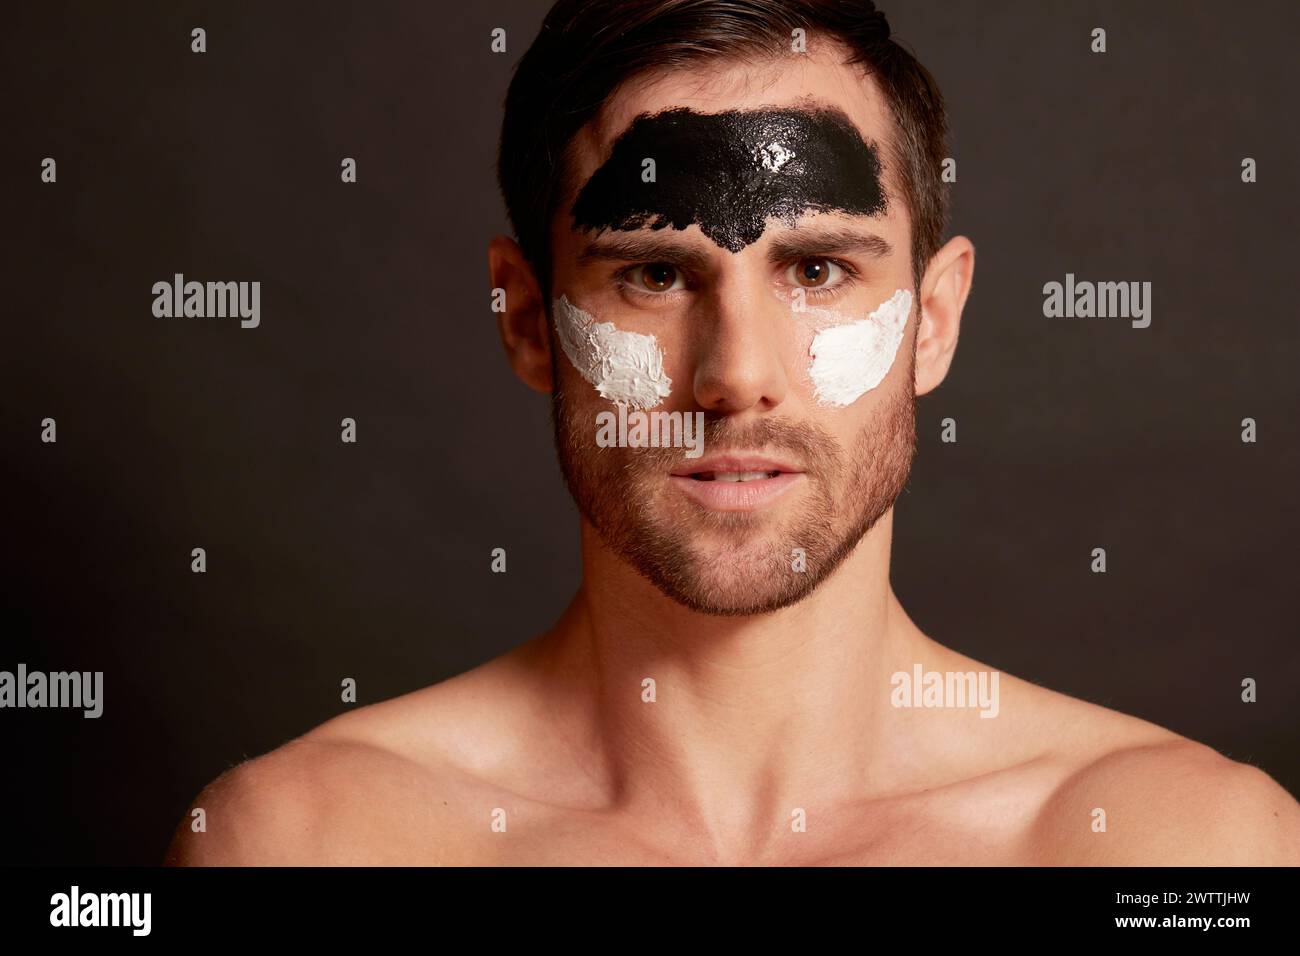 Uomo con vernice per il viso a contrasto Foto Stock